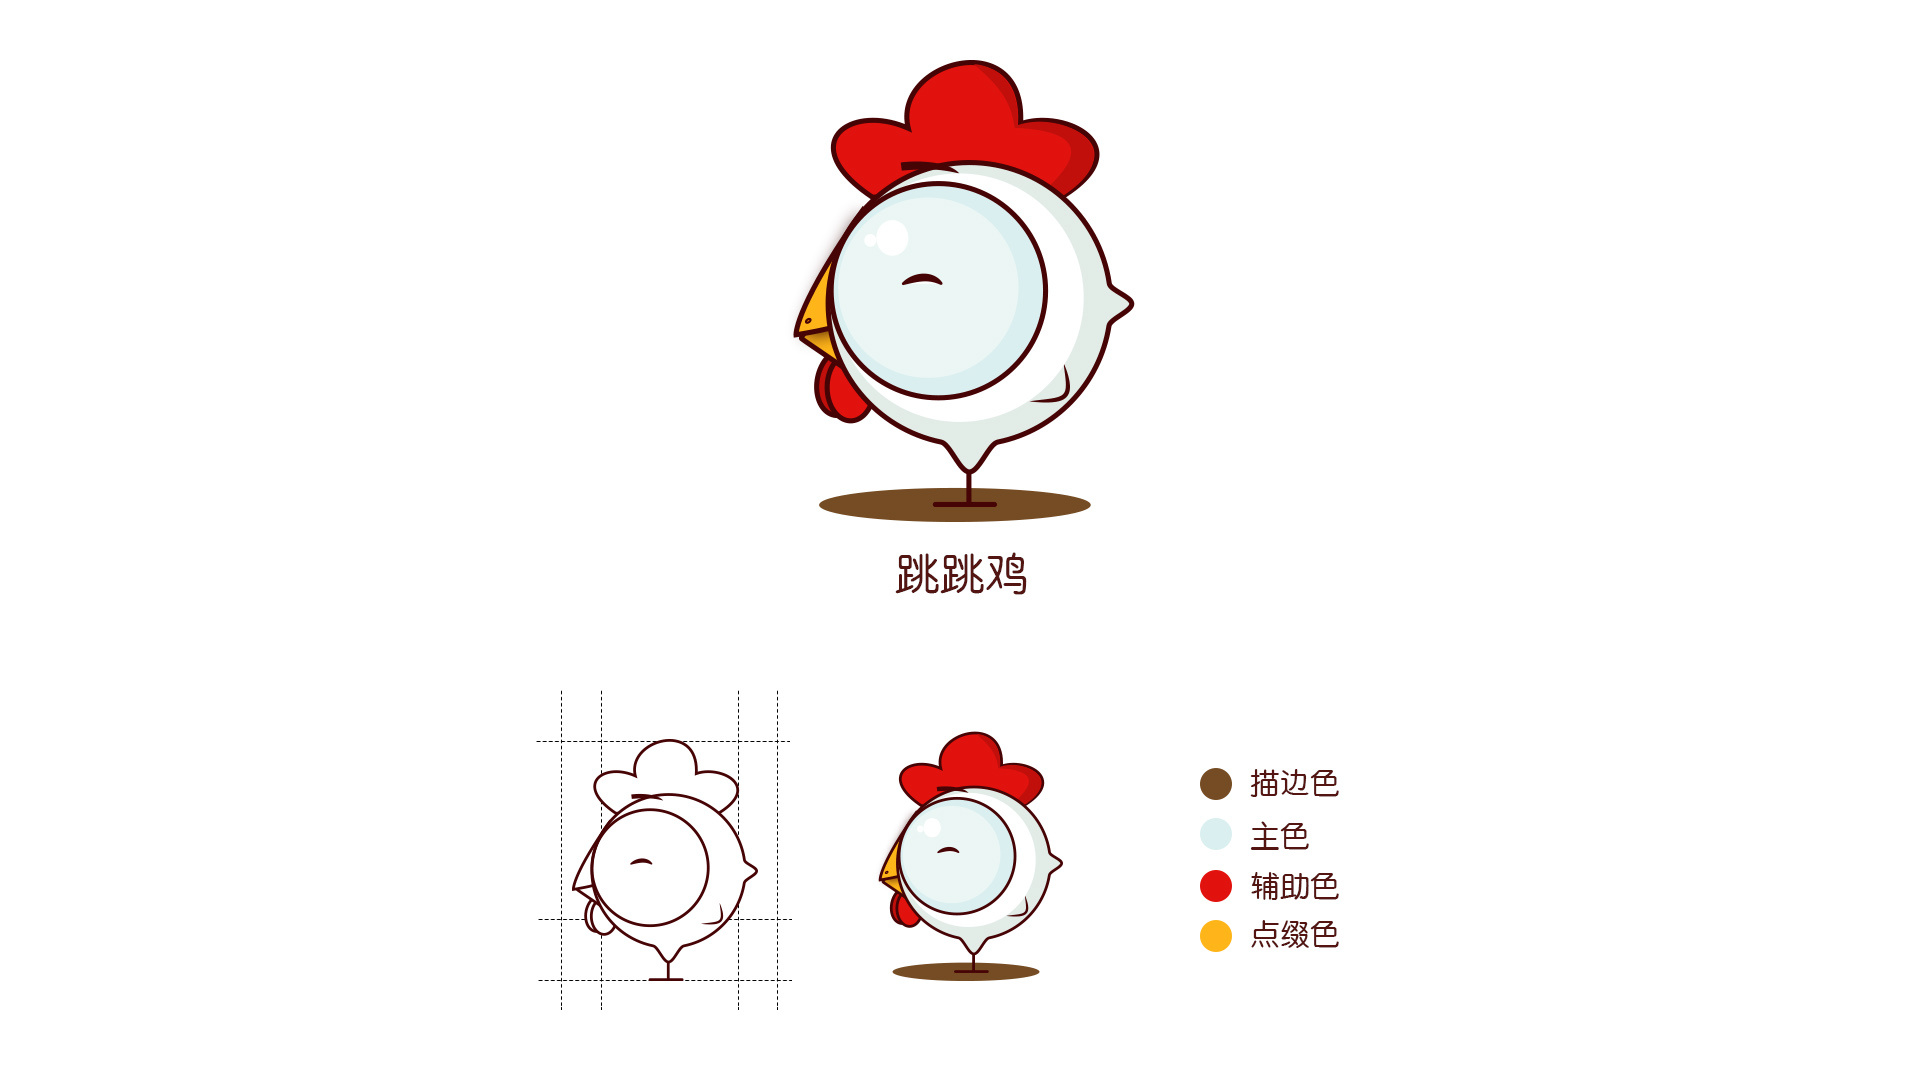 鸡的卡通形象设计